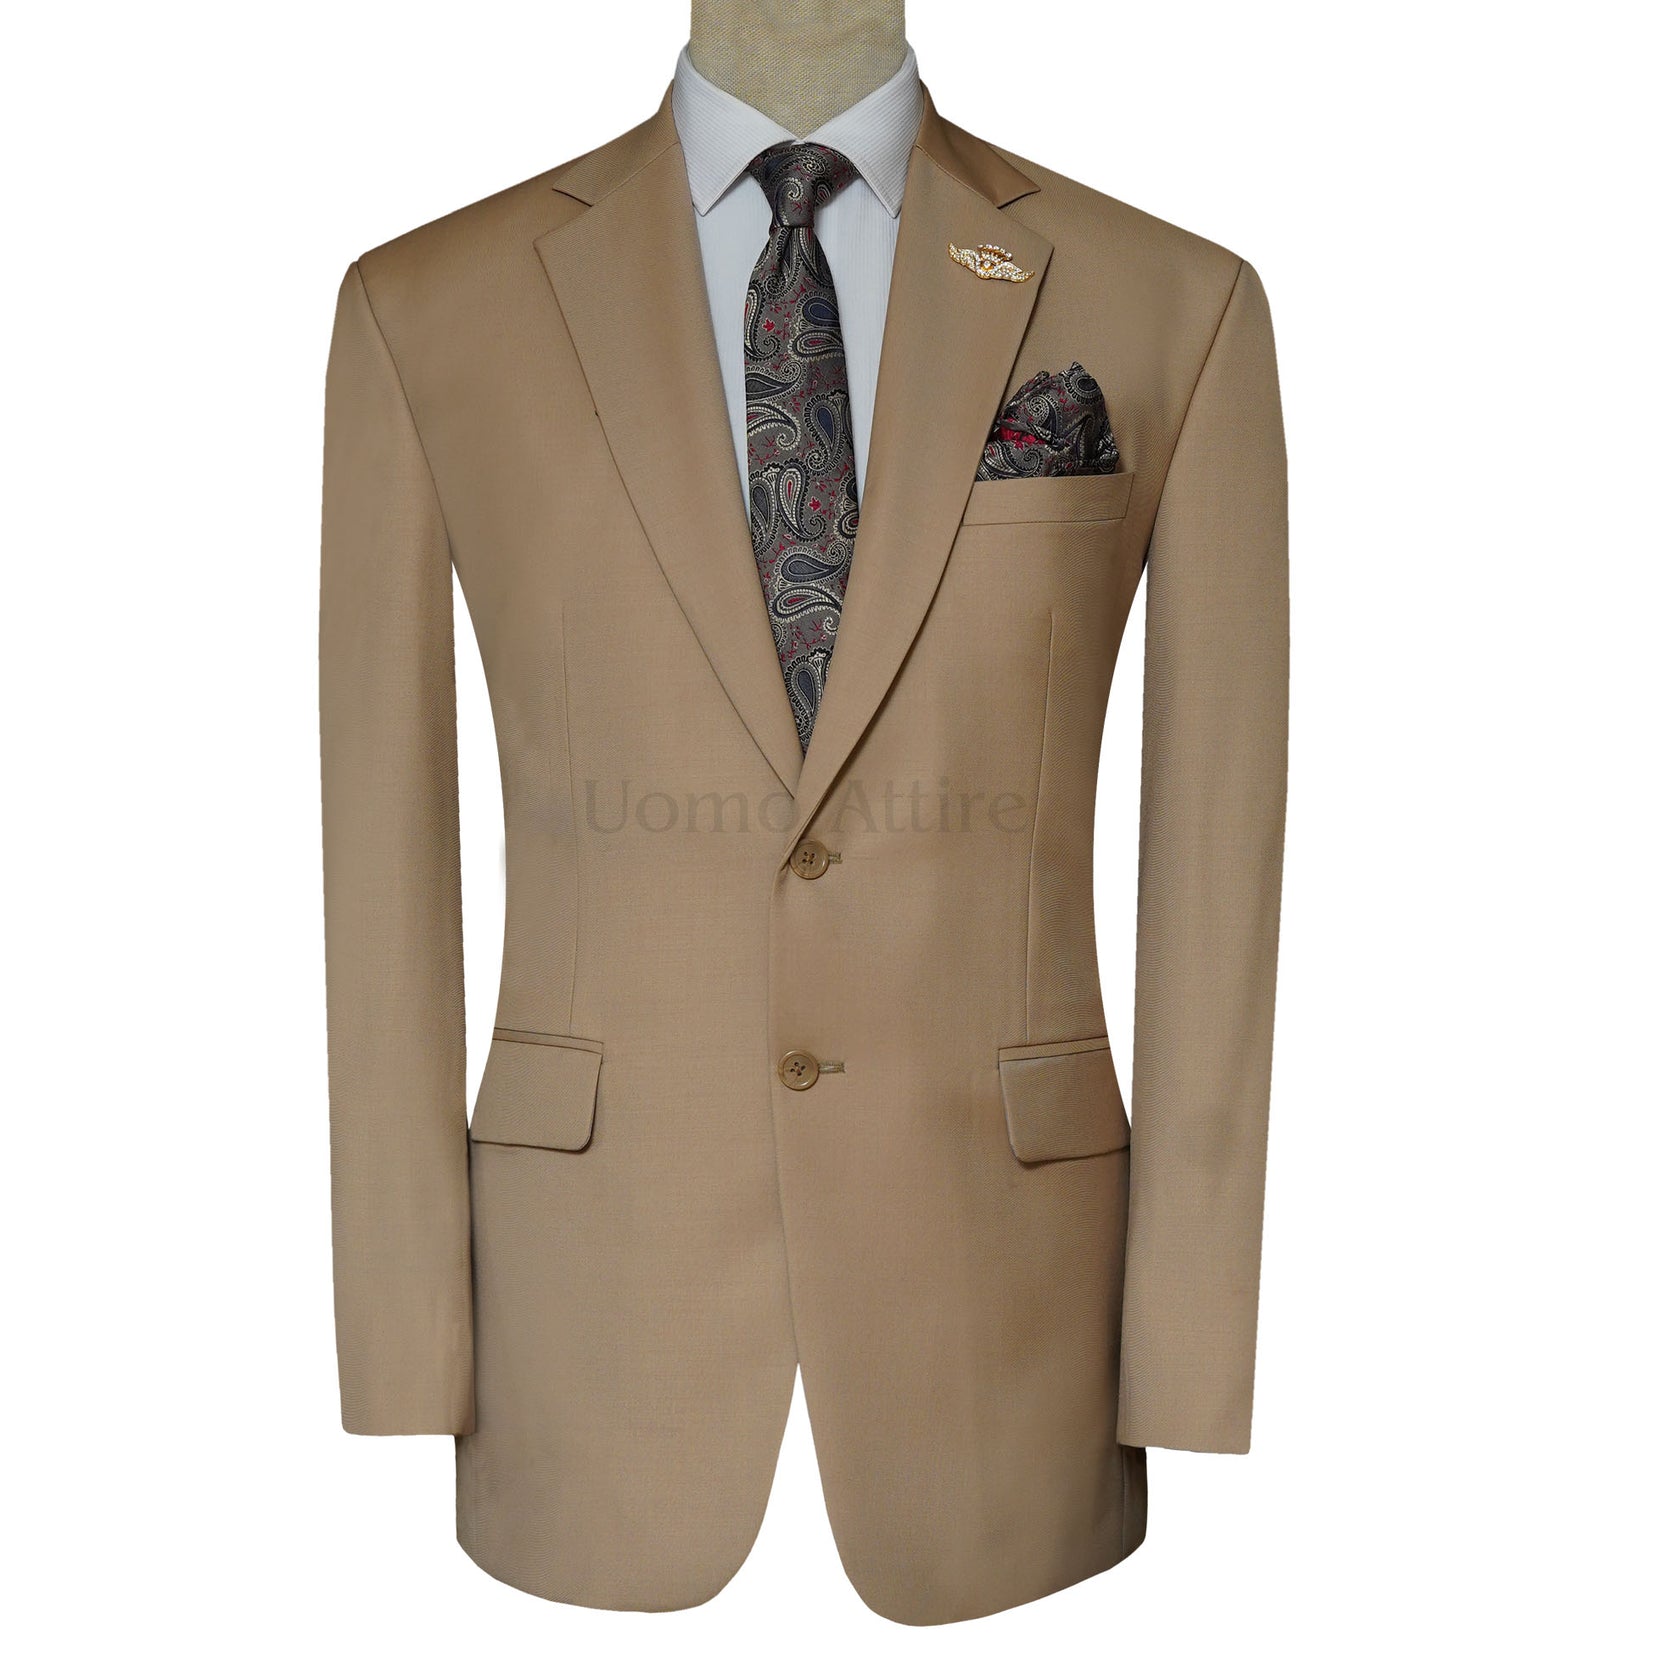 Custom Made Beige Color Slim Fit Men's Suit – Uomo Attire